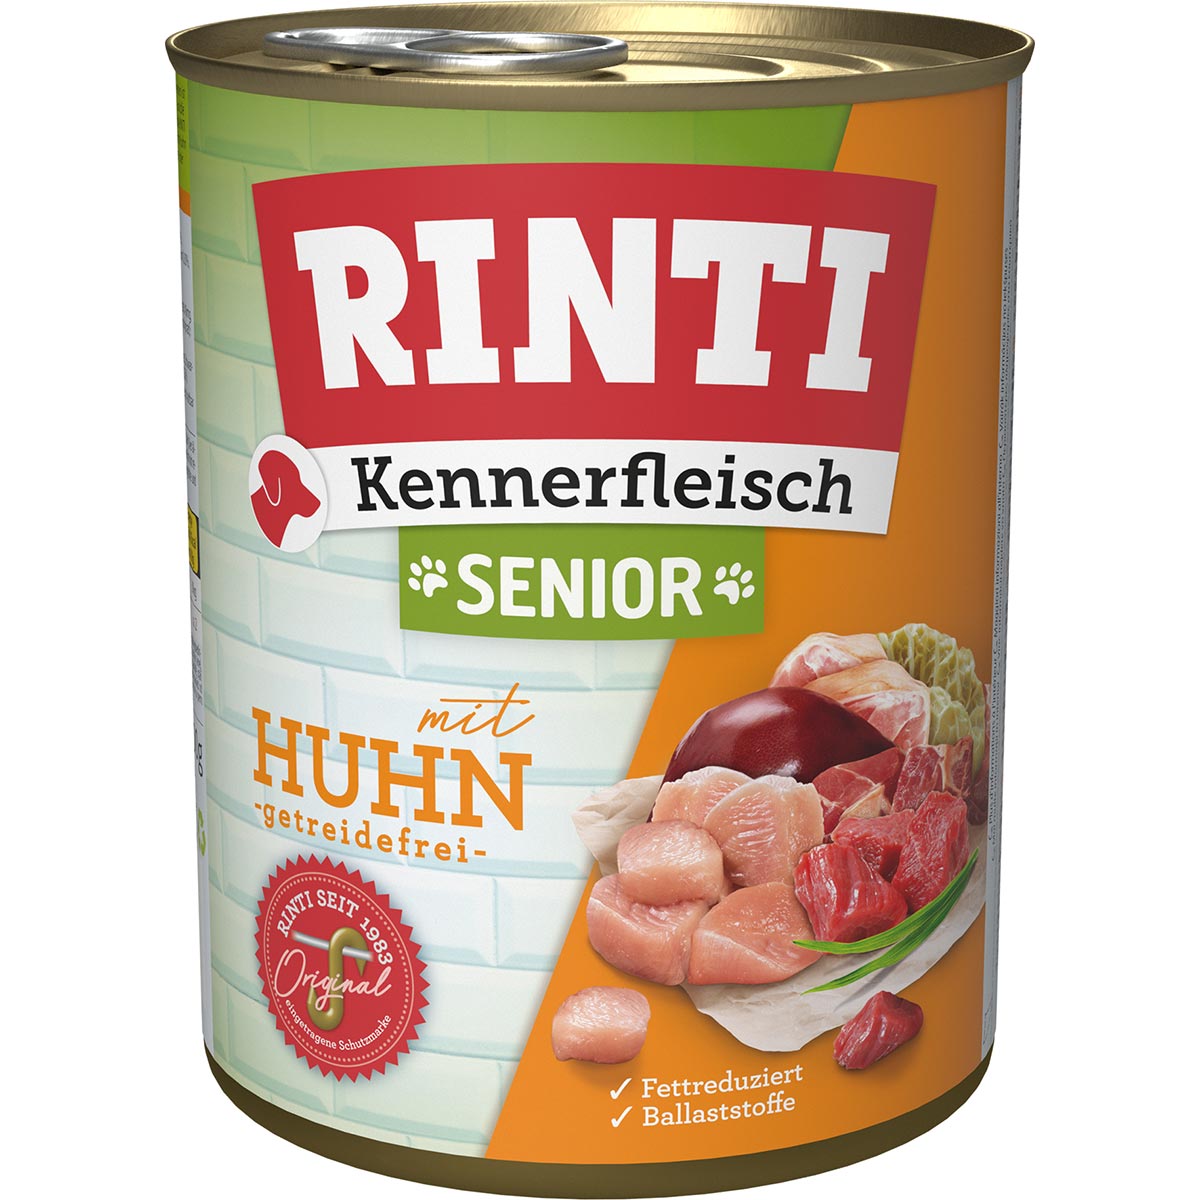 Rinti Kennerfleisch Senior Huhn 12x800g von Rinti